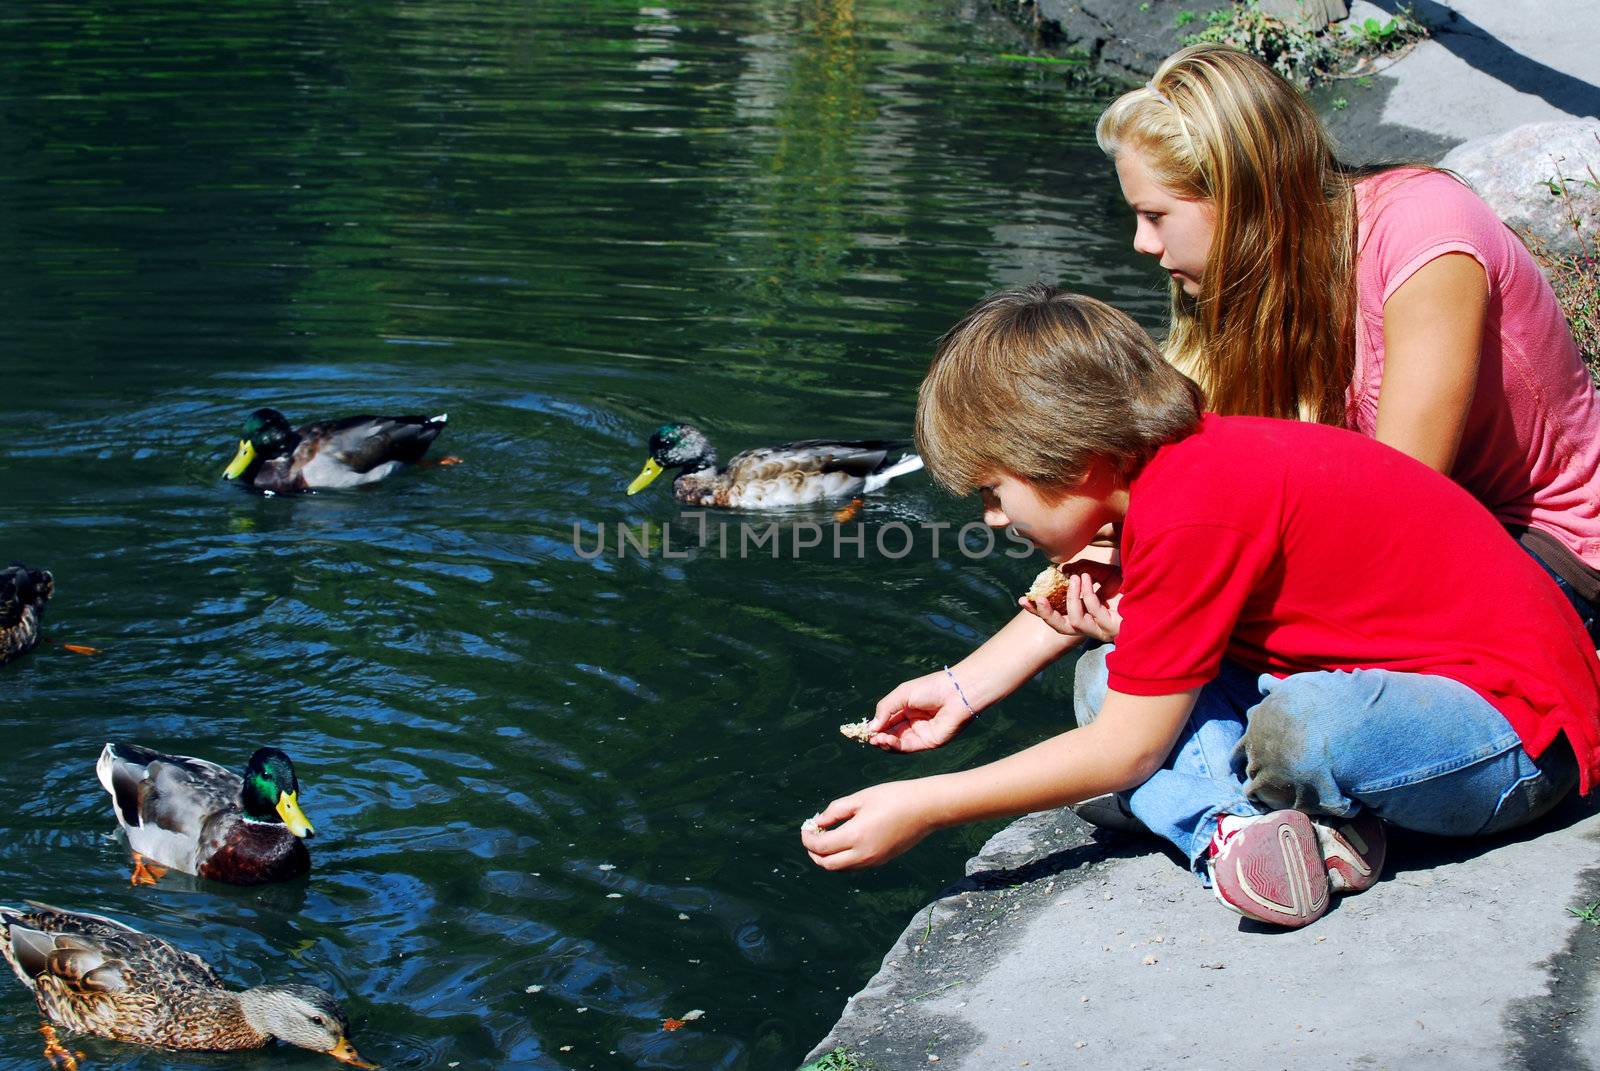 Children feeding ducks by elenathewise